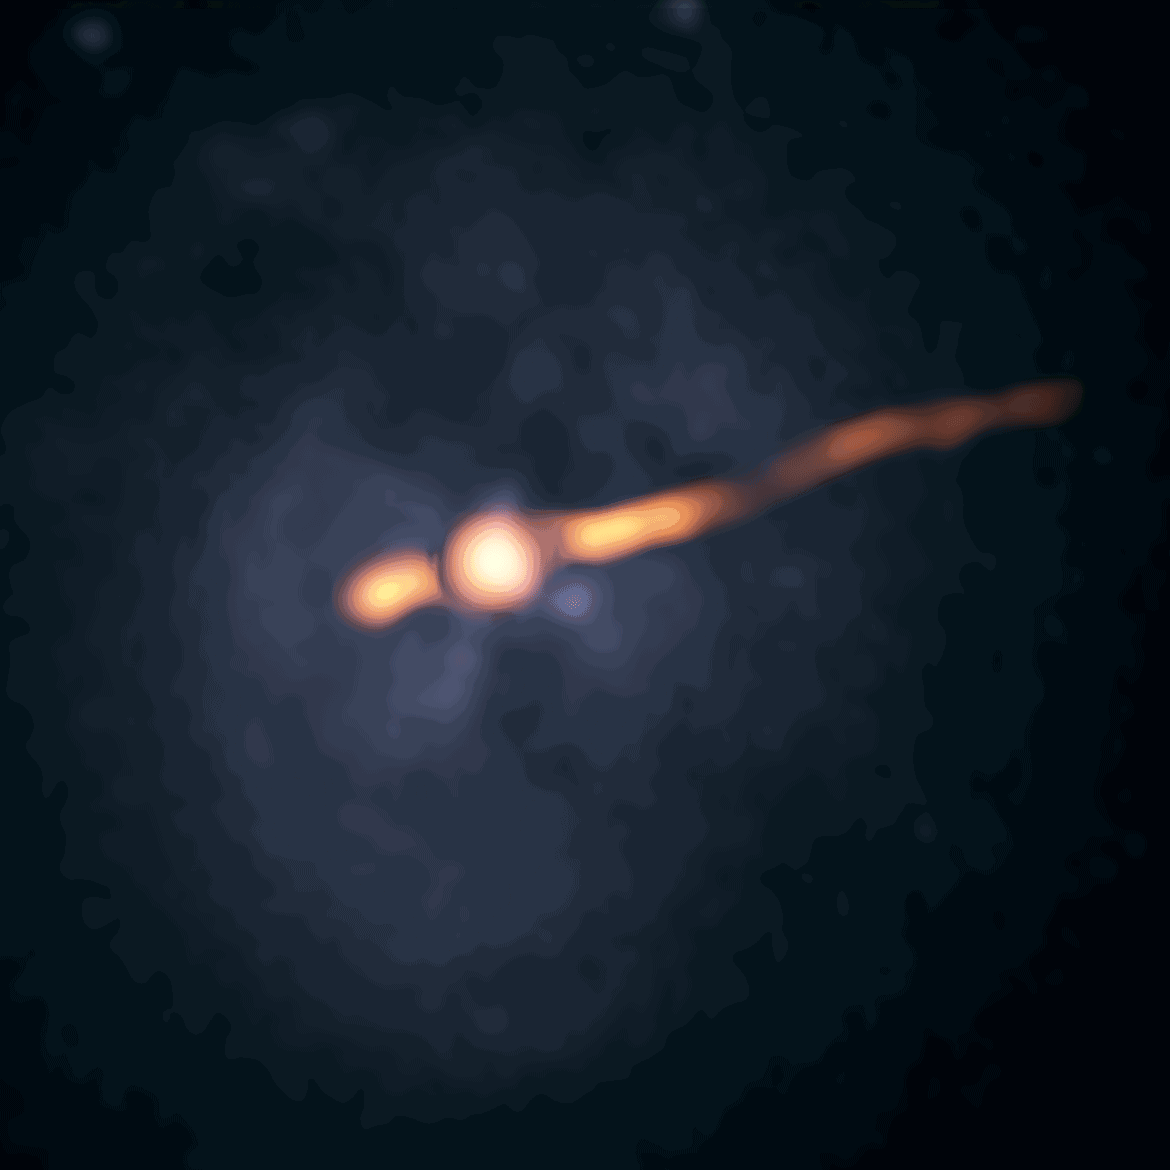 天鹅座A星系中心黑洞附近突现不明无线电信号源